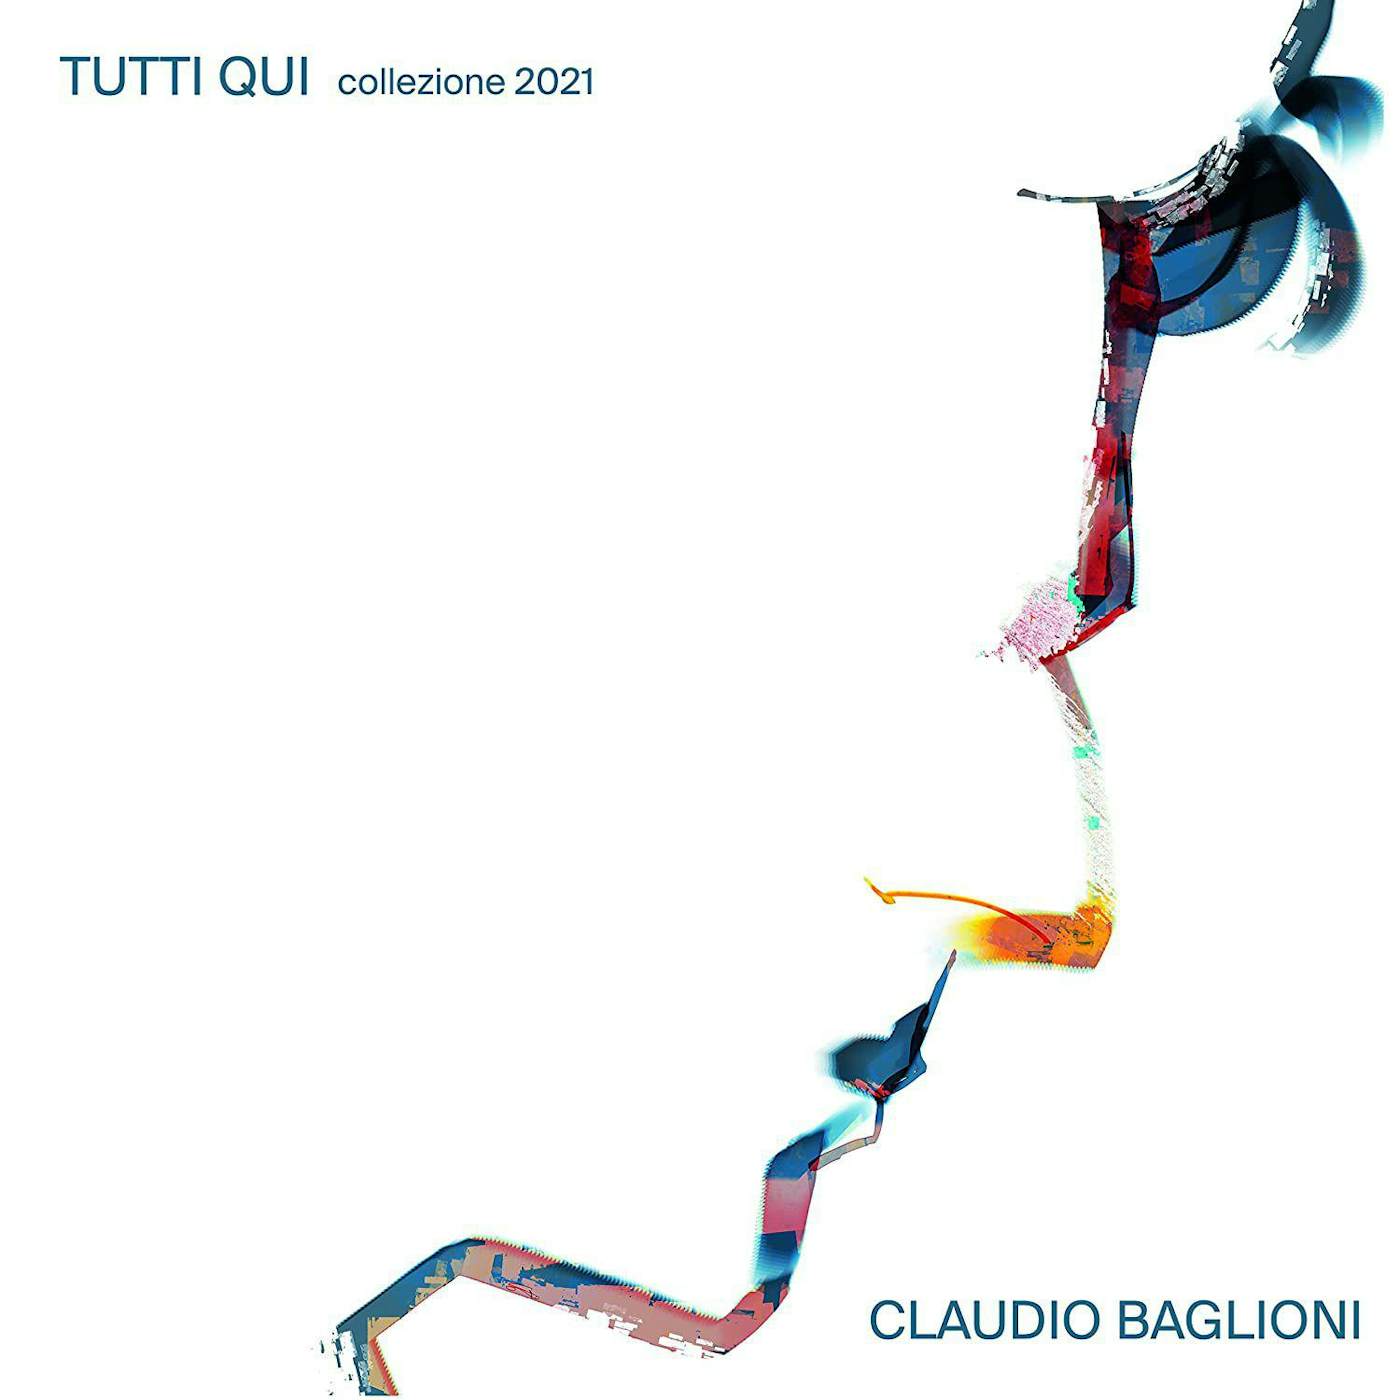 Claudio Baglioni TUTTI QUI COLLEZIONE 2021 VOL 2 Vinyl Record